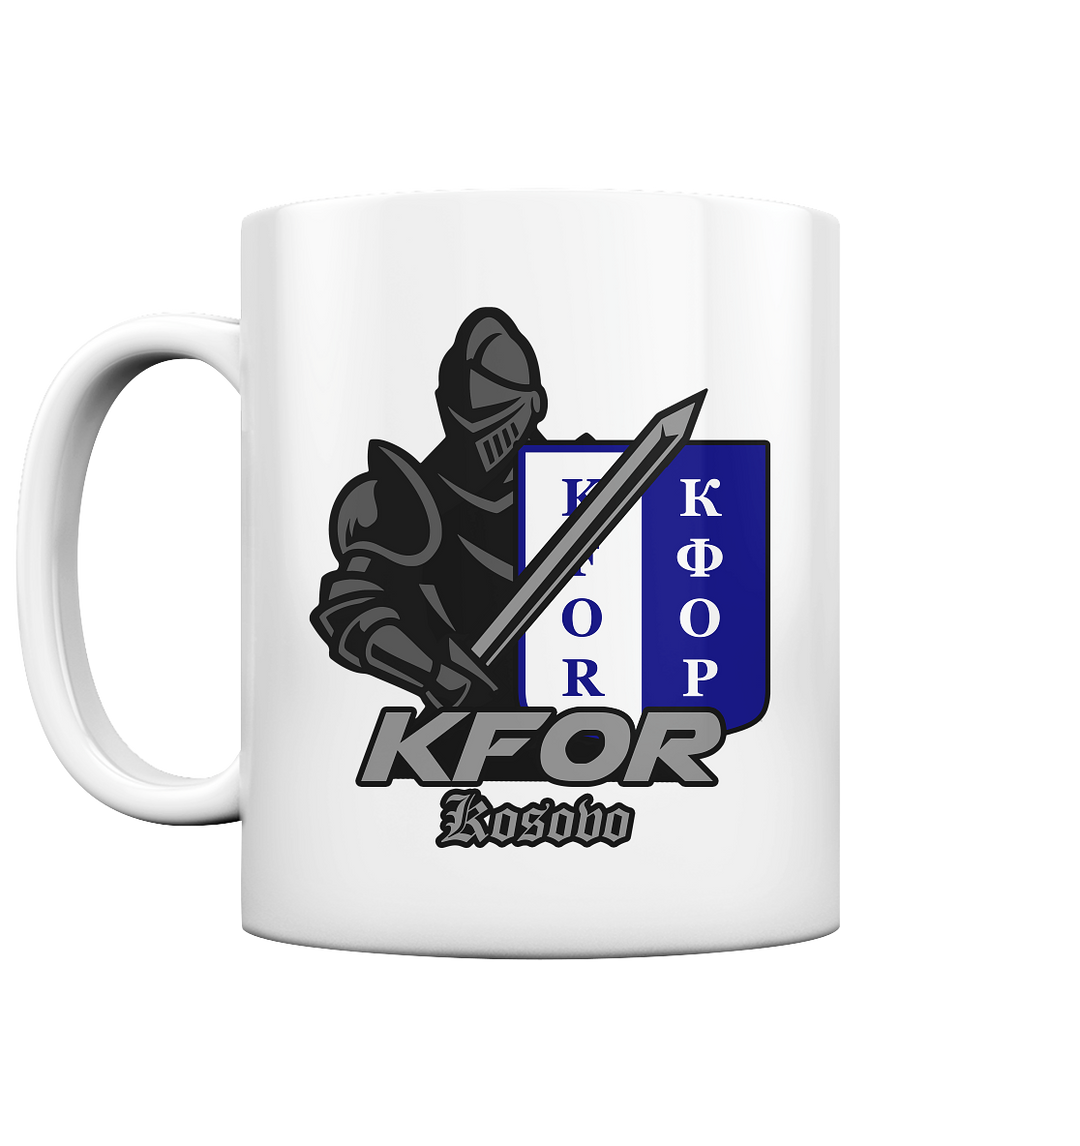 "KFOR Kosovo - Ritter" - Tasse glossy